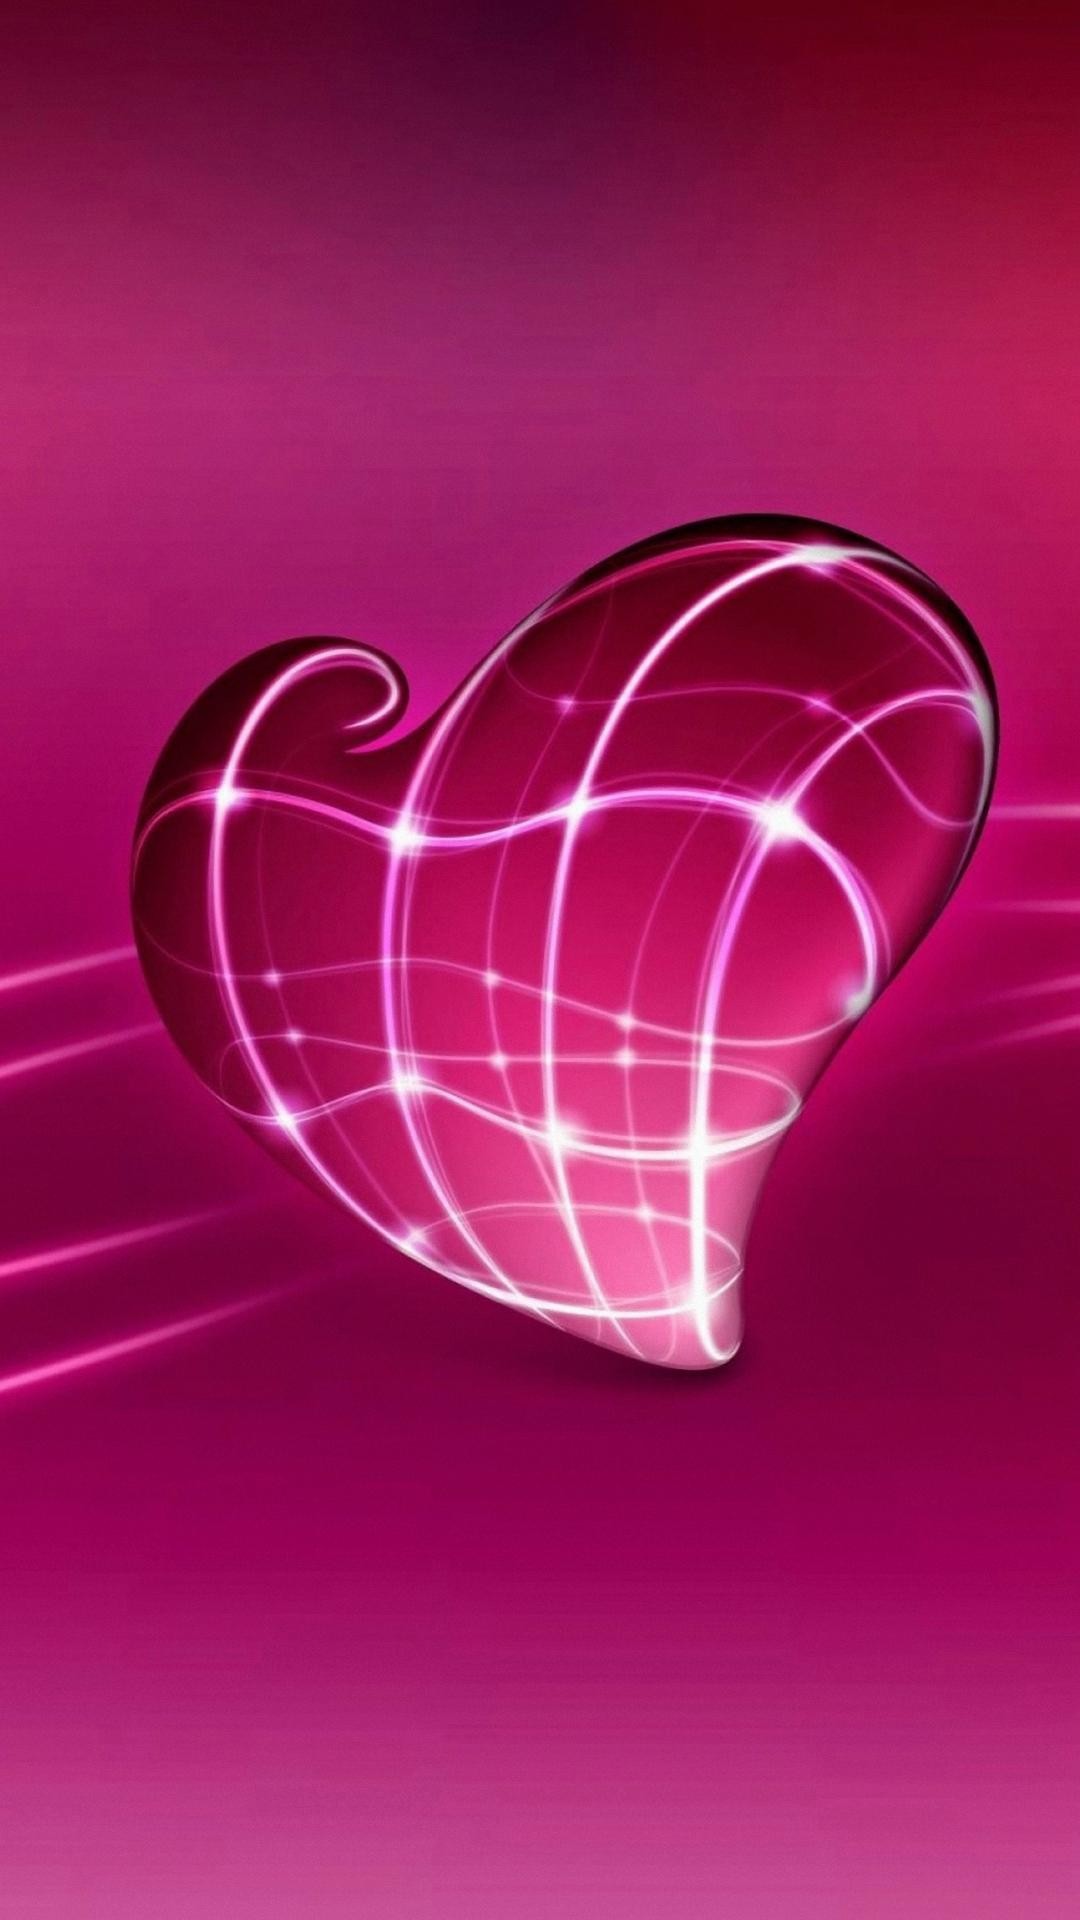 1080x1920 wallpaper.wiki-Light-Heart-Cool-Pink-Iphone-Wallpaper-